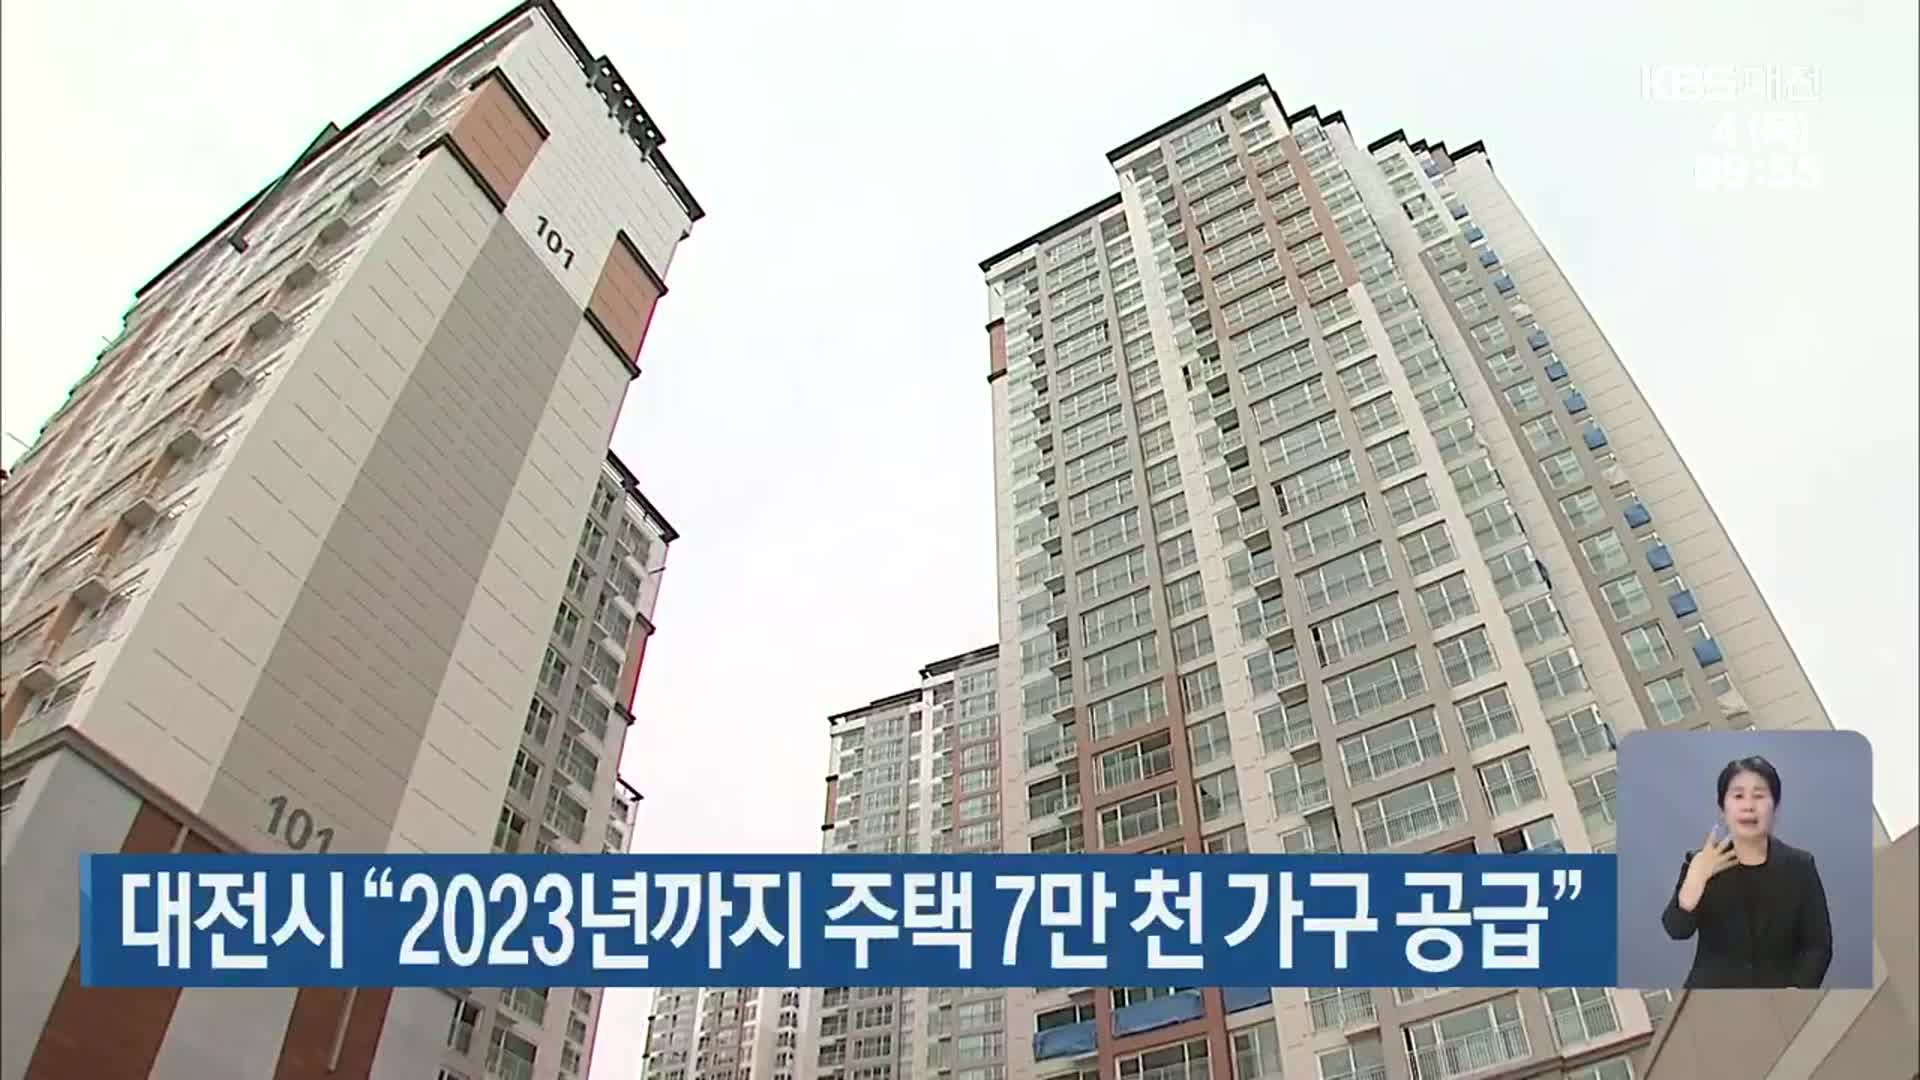 대전시 “2023년까지 주택 7만 천 가구 공급”